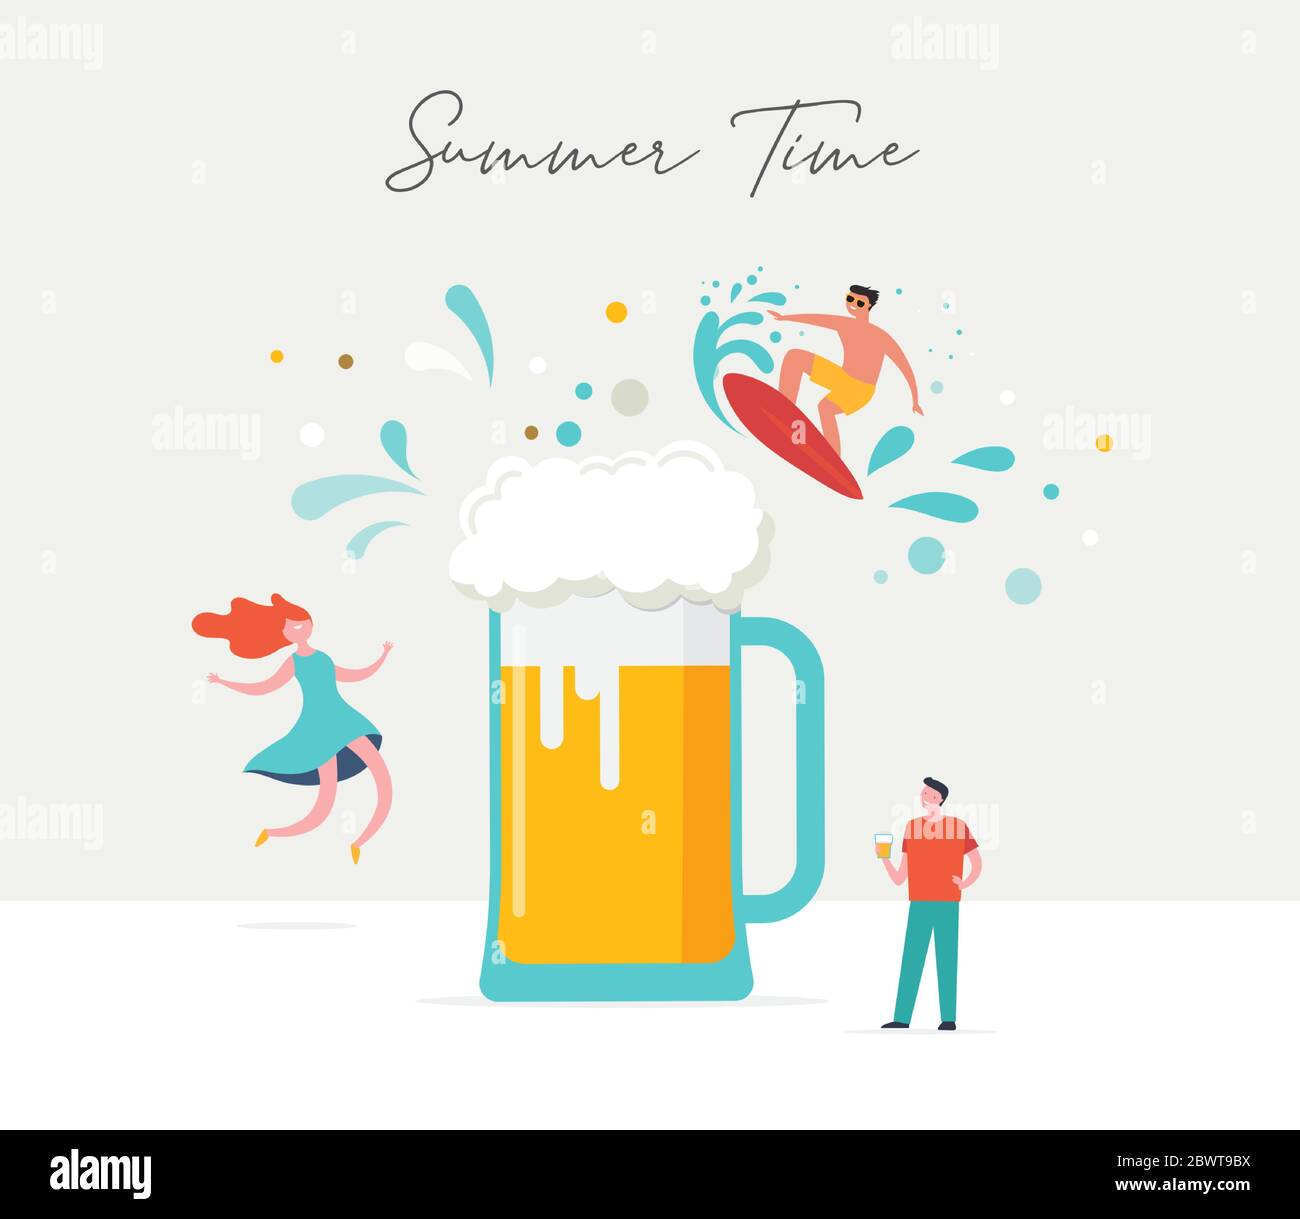 Scena estiva, gruppo di persone, famiglia e amici che si divertono intorno a una birra enorme, surf, nuoto in piscina, bere bevande fredde, giocare sul Illustrazione Vettoriale